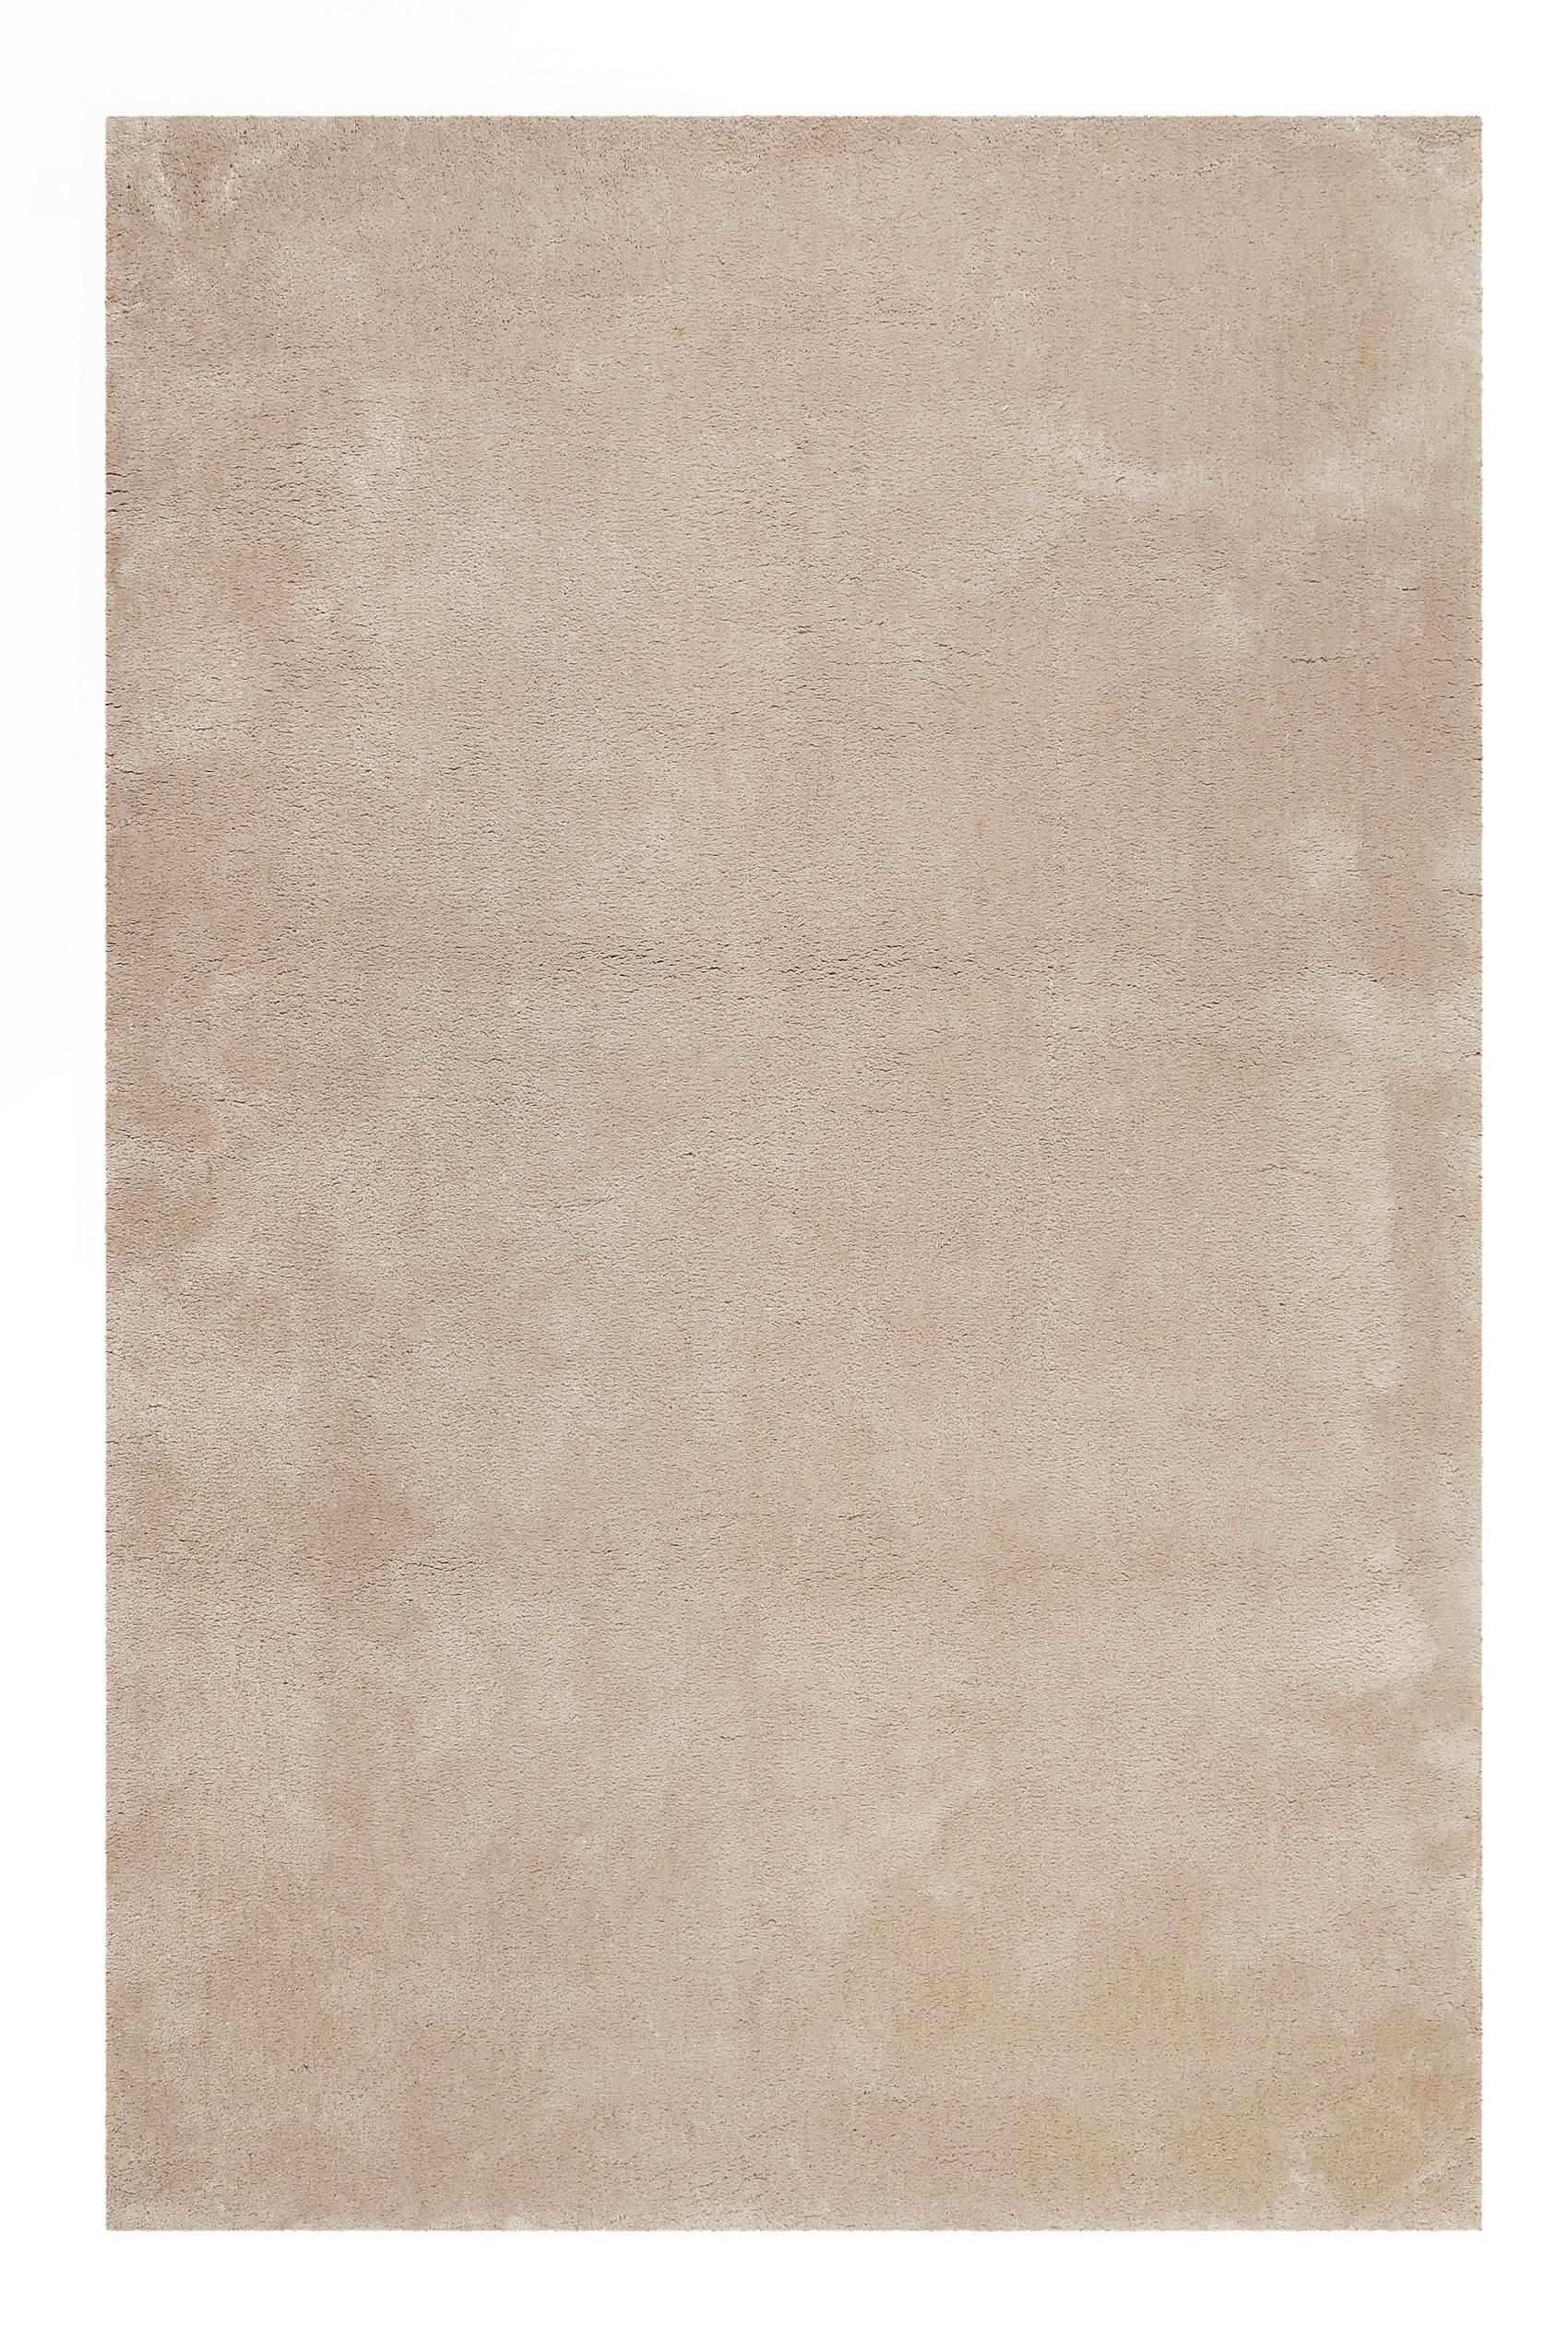 HOCHFLORTEPPICH 80/150 cm Emilia  - Beige, Design, Textil (80/150cm) - Novel